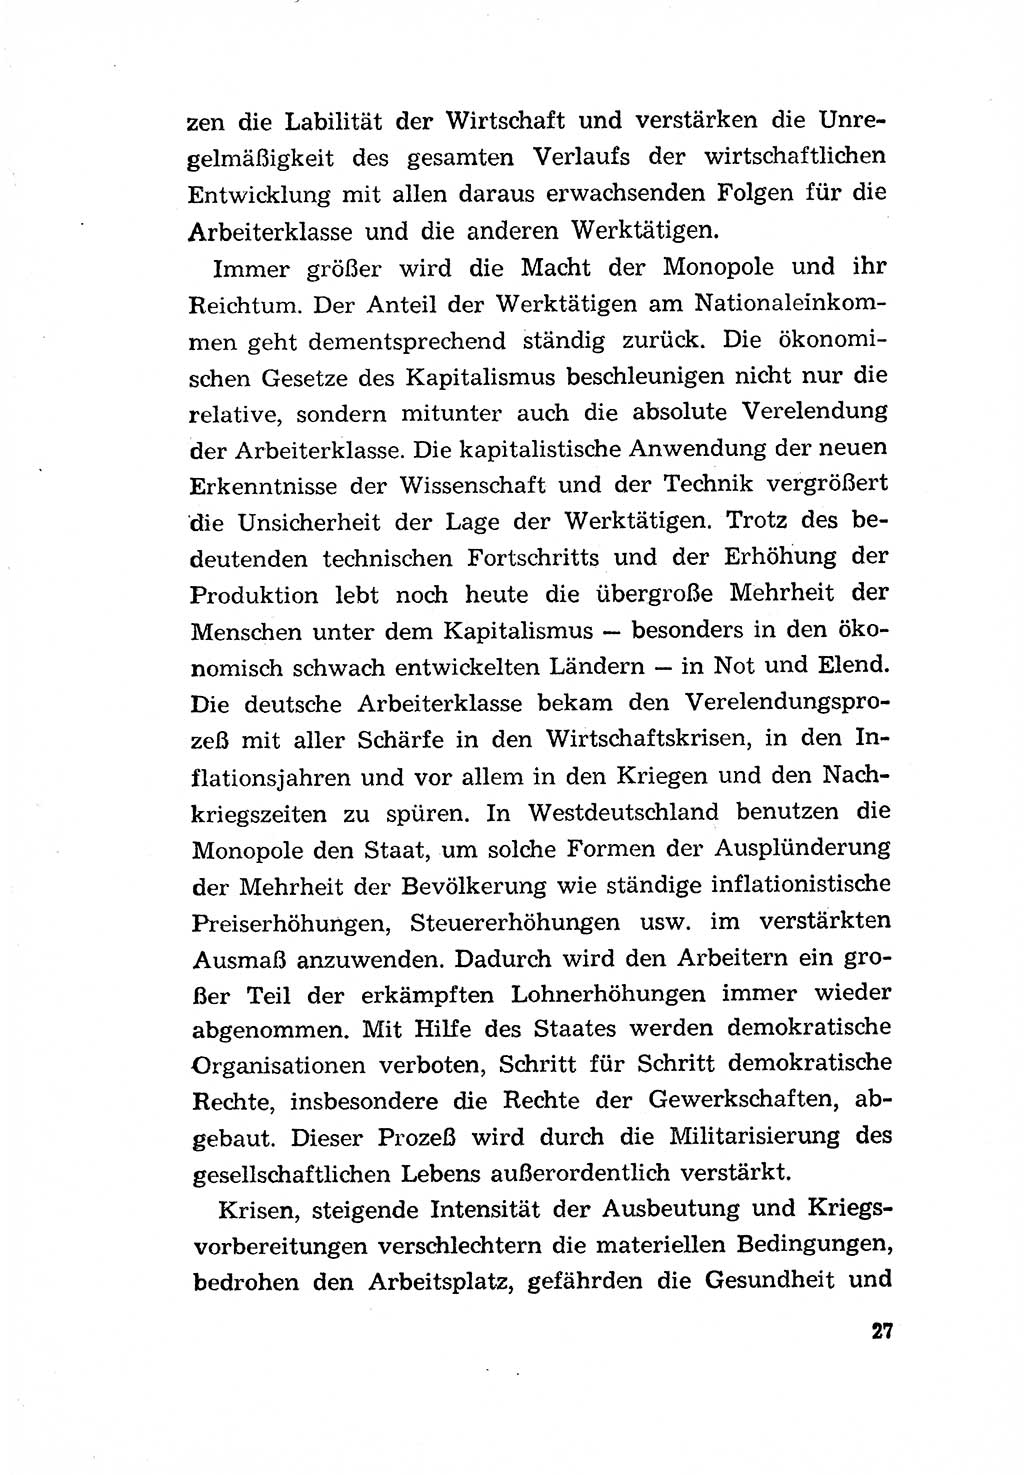 Programm der Sozialistischen Einheitspartei Deutschlands (SED) [Deutsche Demokratische Republik (DDR)] 1963, Seite 27 (Progr. SED DDR 1963, S. 27)